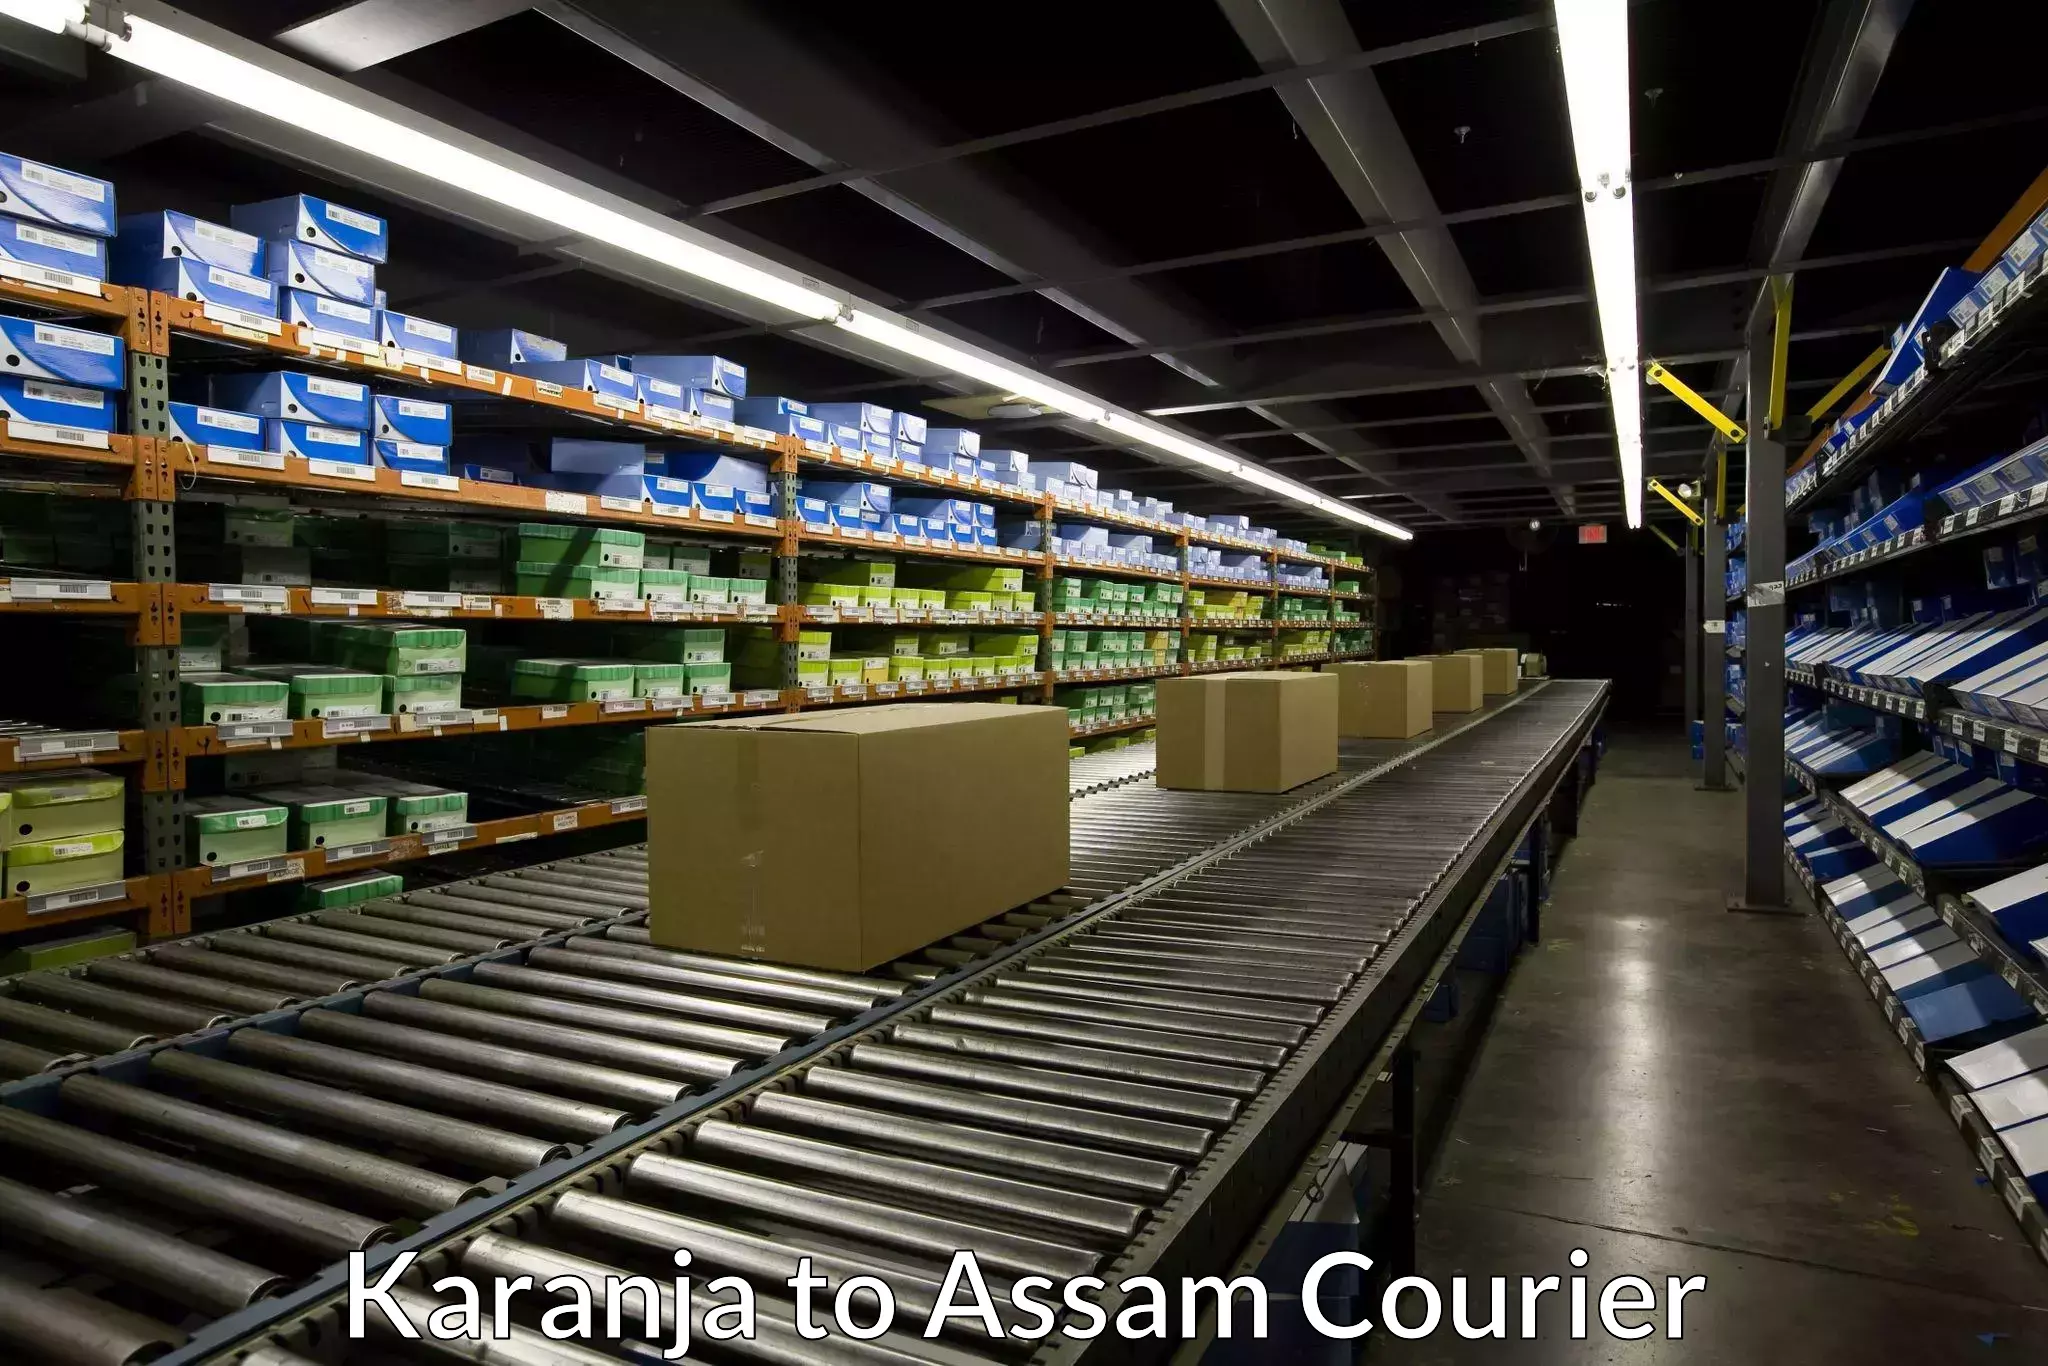 Weekend courier service Karanja to Assam